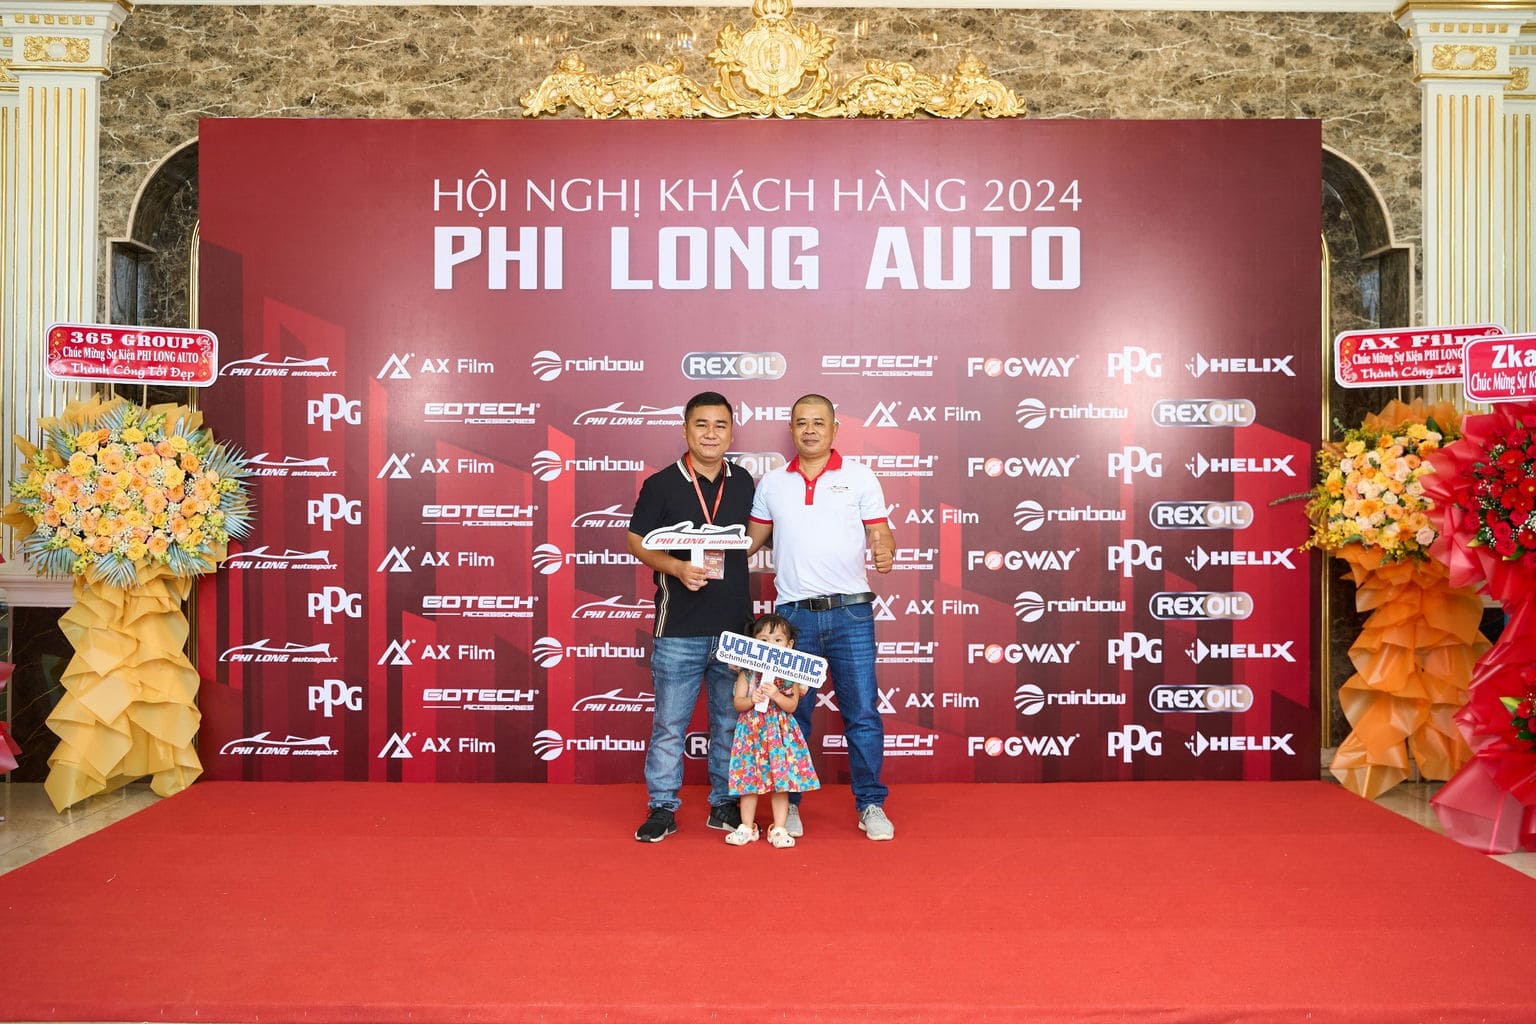 HOI NGHI KHACH HANG PHI LONG AUTO 2024 38 | Phi Long Auto